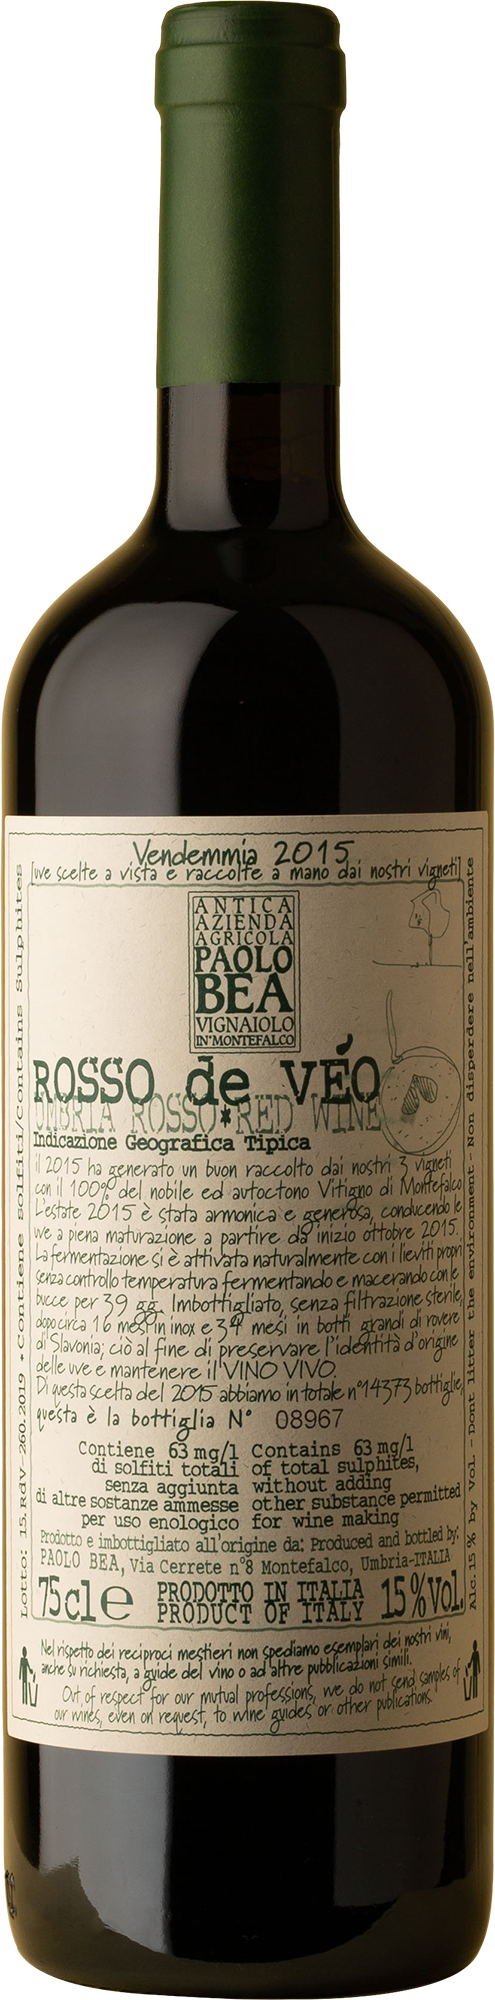 Paolo Bea - Rosso de Veo Sagrantino 2015 Red Wine